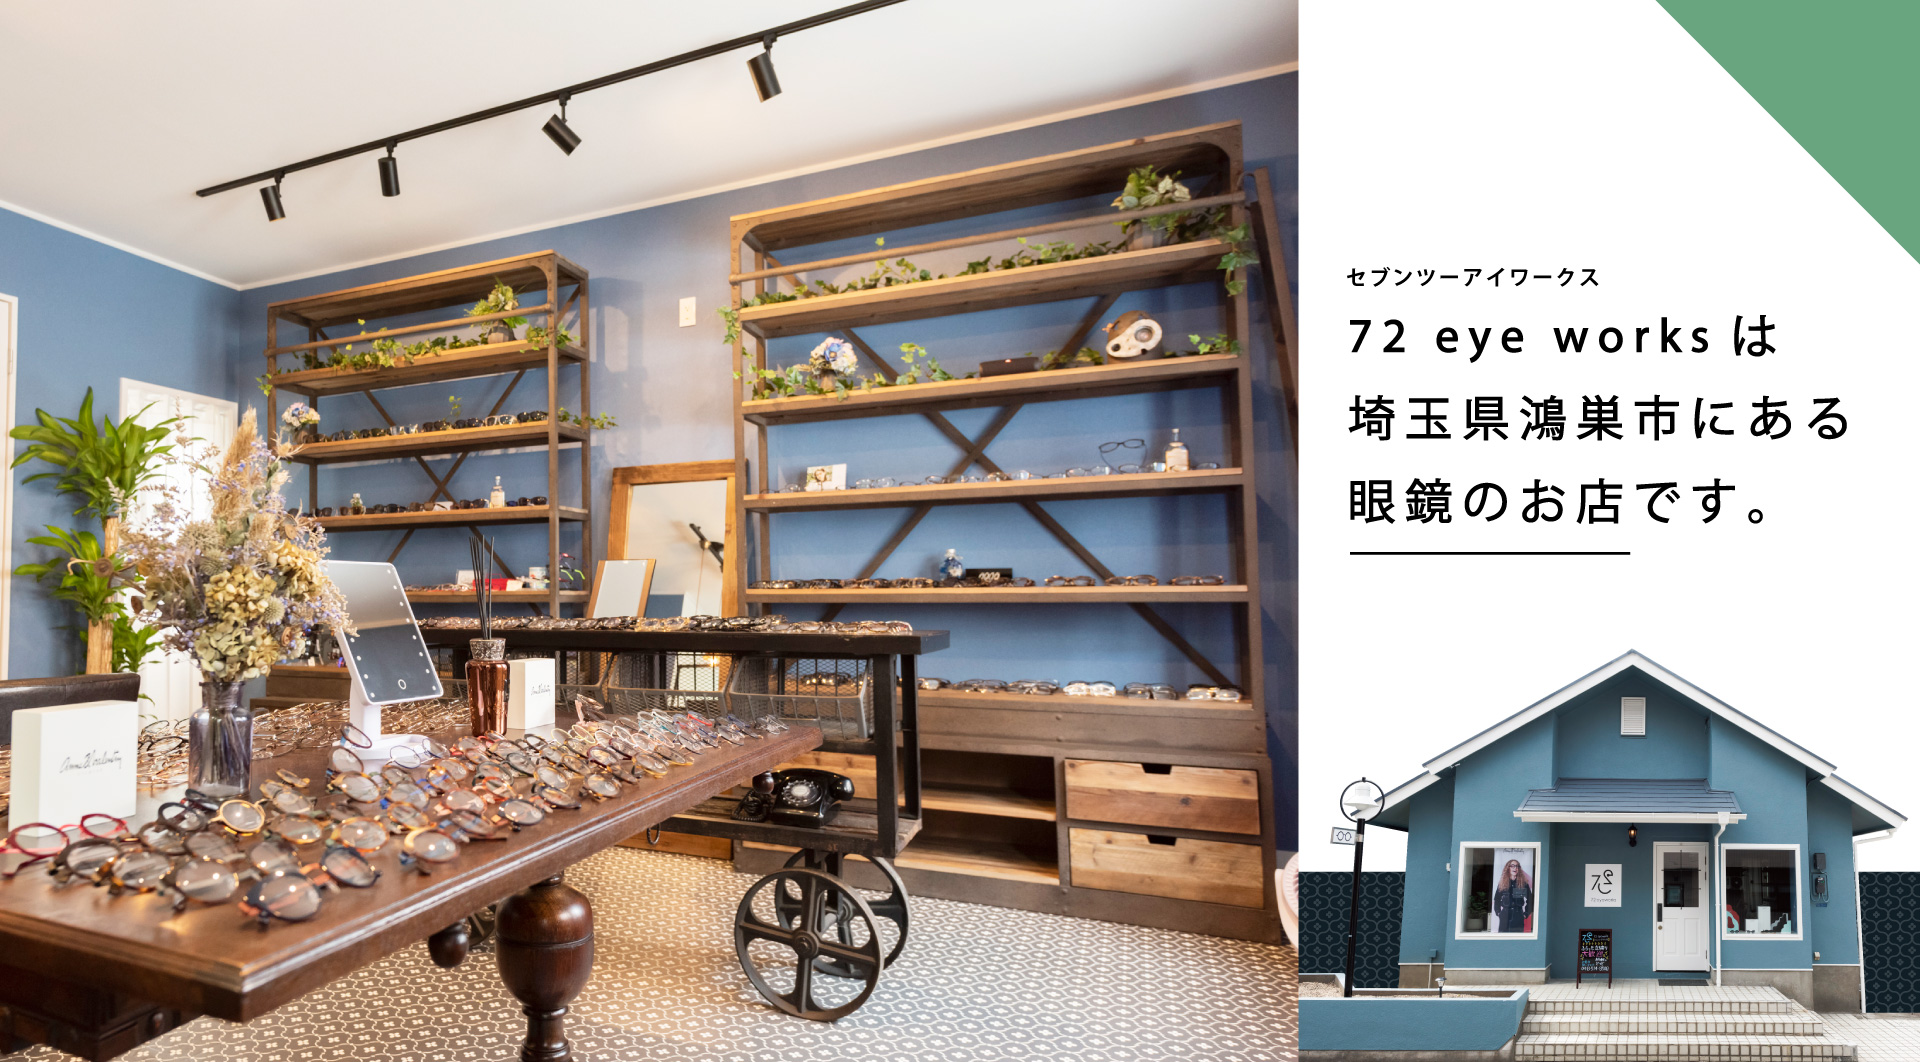 72 eye worksは埼玉県鴻巣市にある眼鏡のお店です。